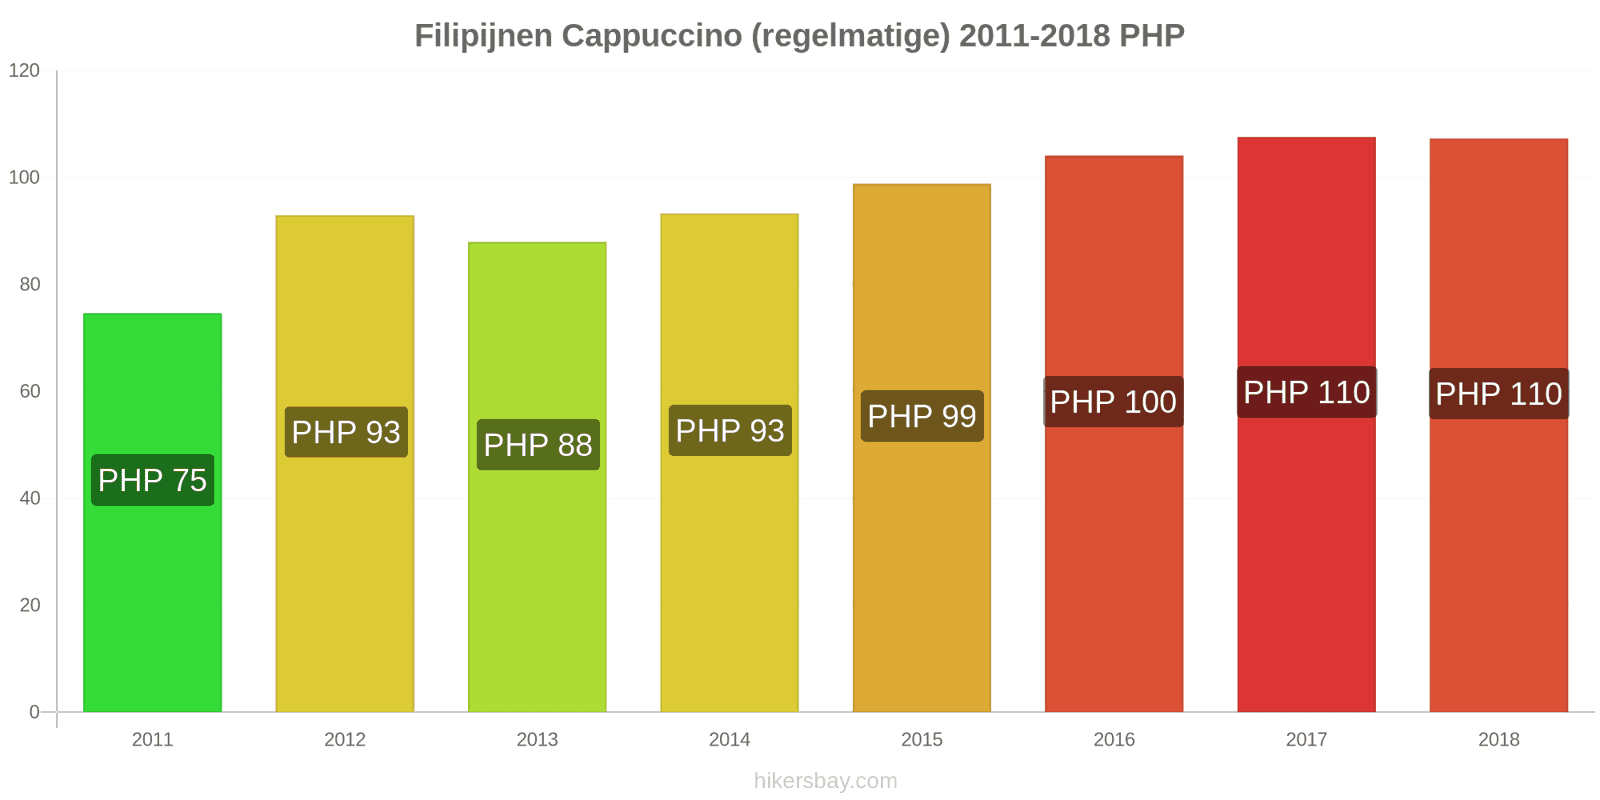 Filipijnen prijswijzigingen Cappuccino hikersbay.com